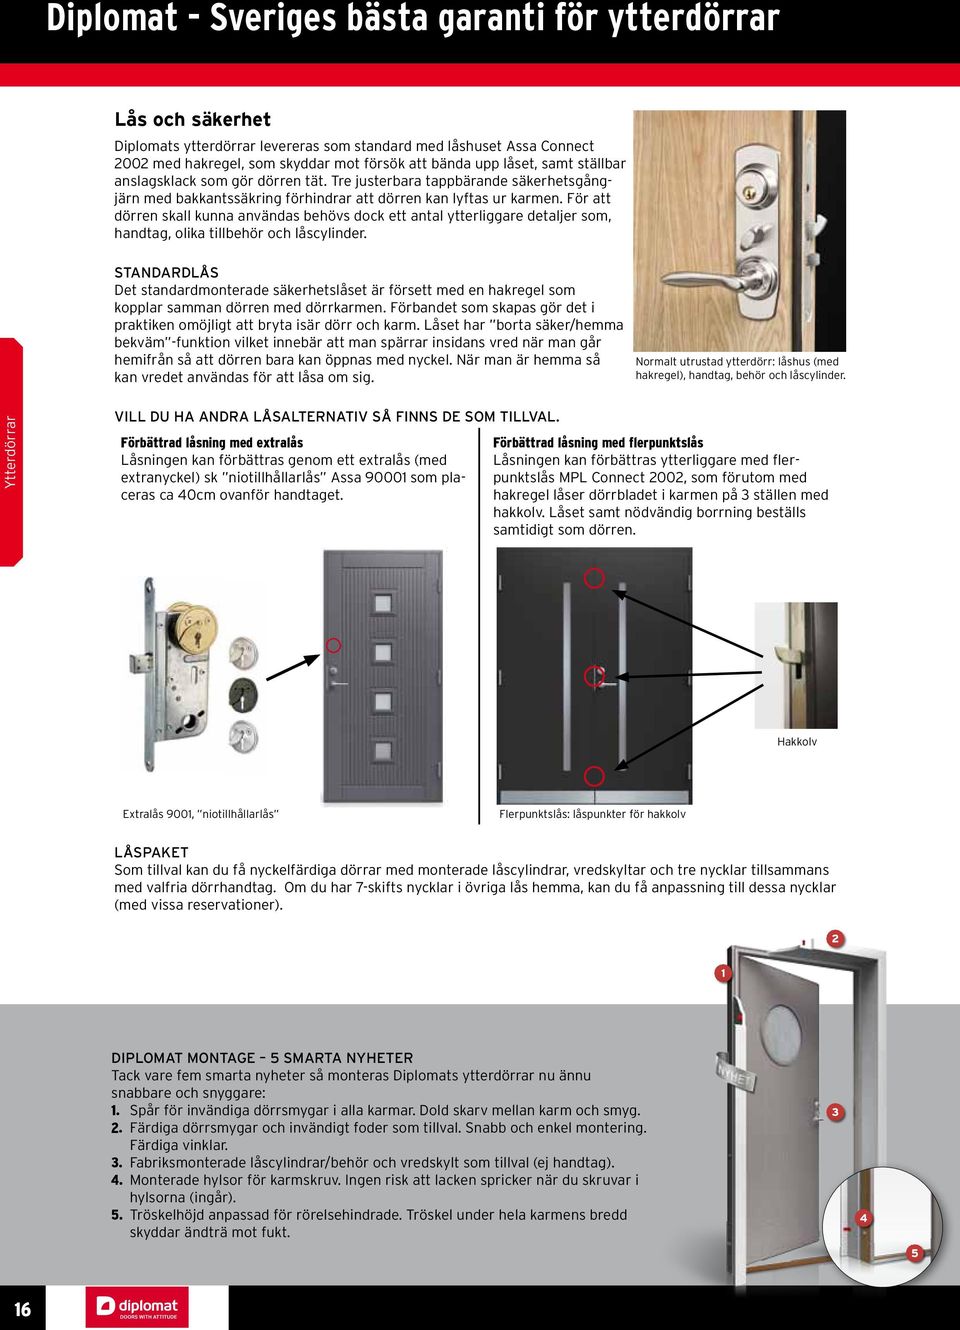 För att dörren skall kunna användas behövs dock ett antal ytterliggare detaljer som, handtag, olika tillbehör och låscylinder.